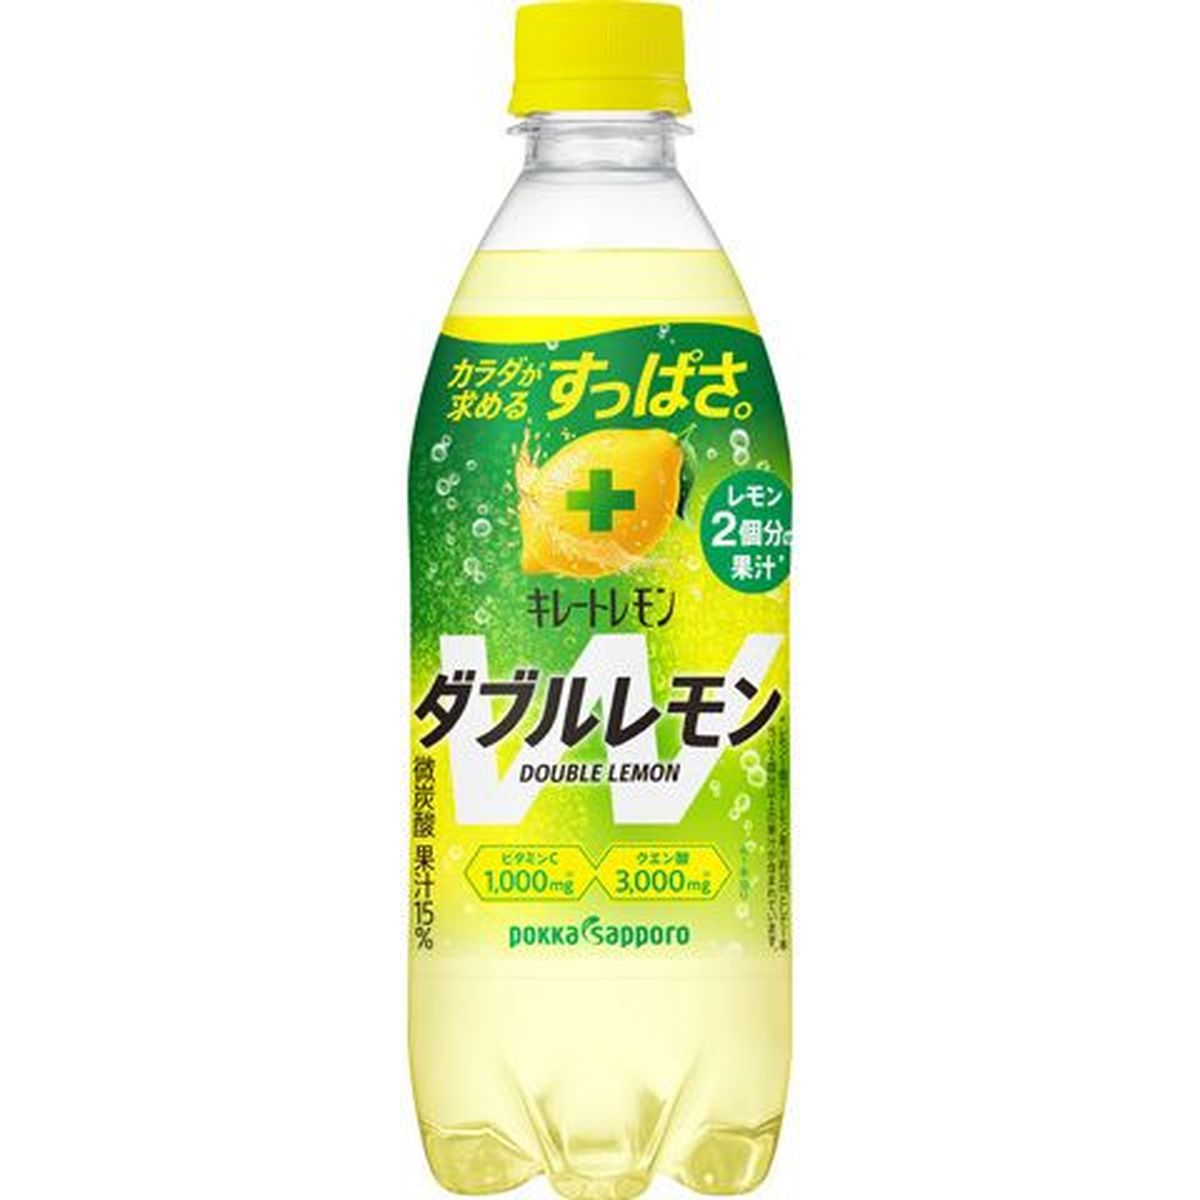 【24個入リ】ポッカサッポロ キレートレモンWレモン 500ml